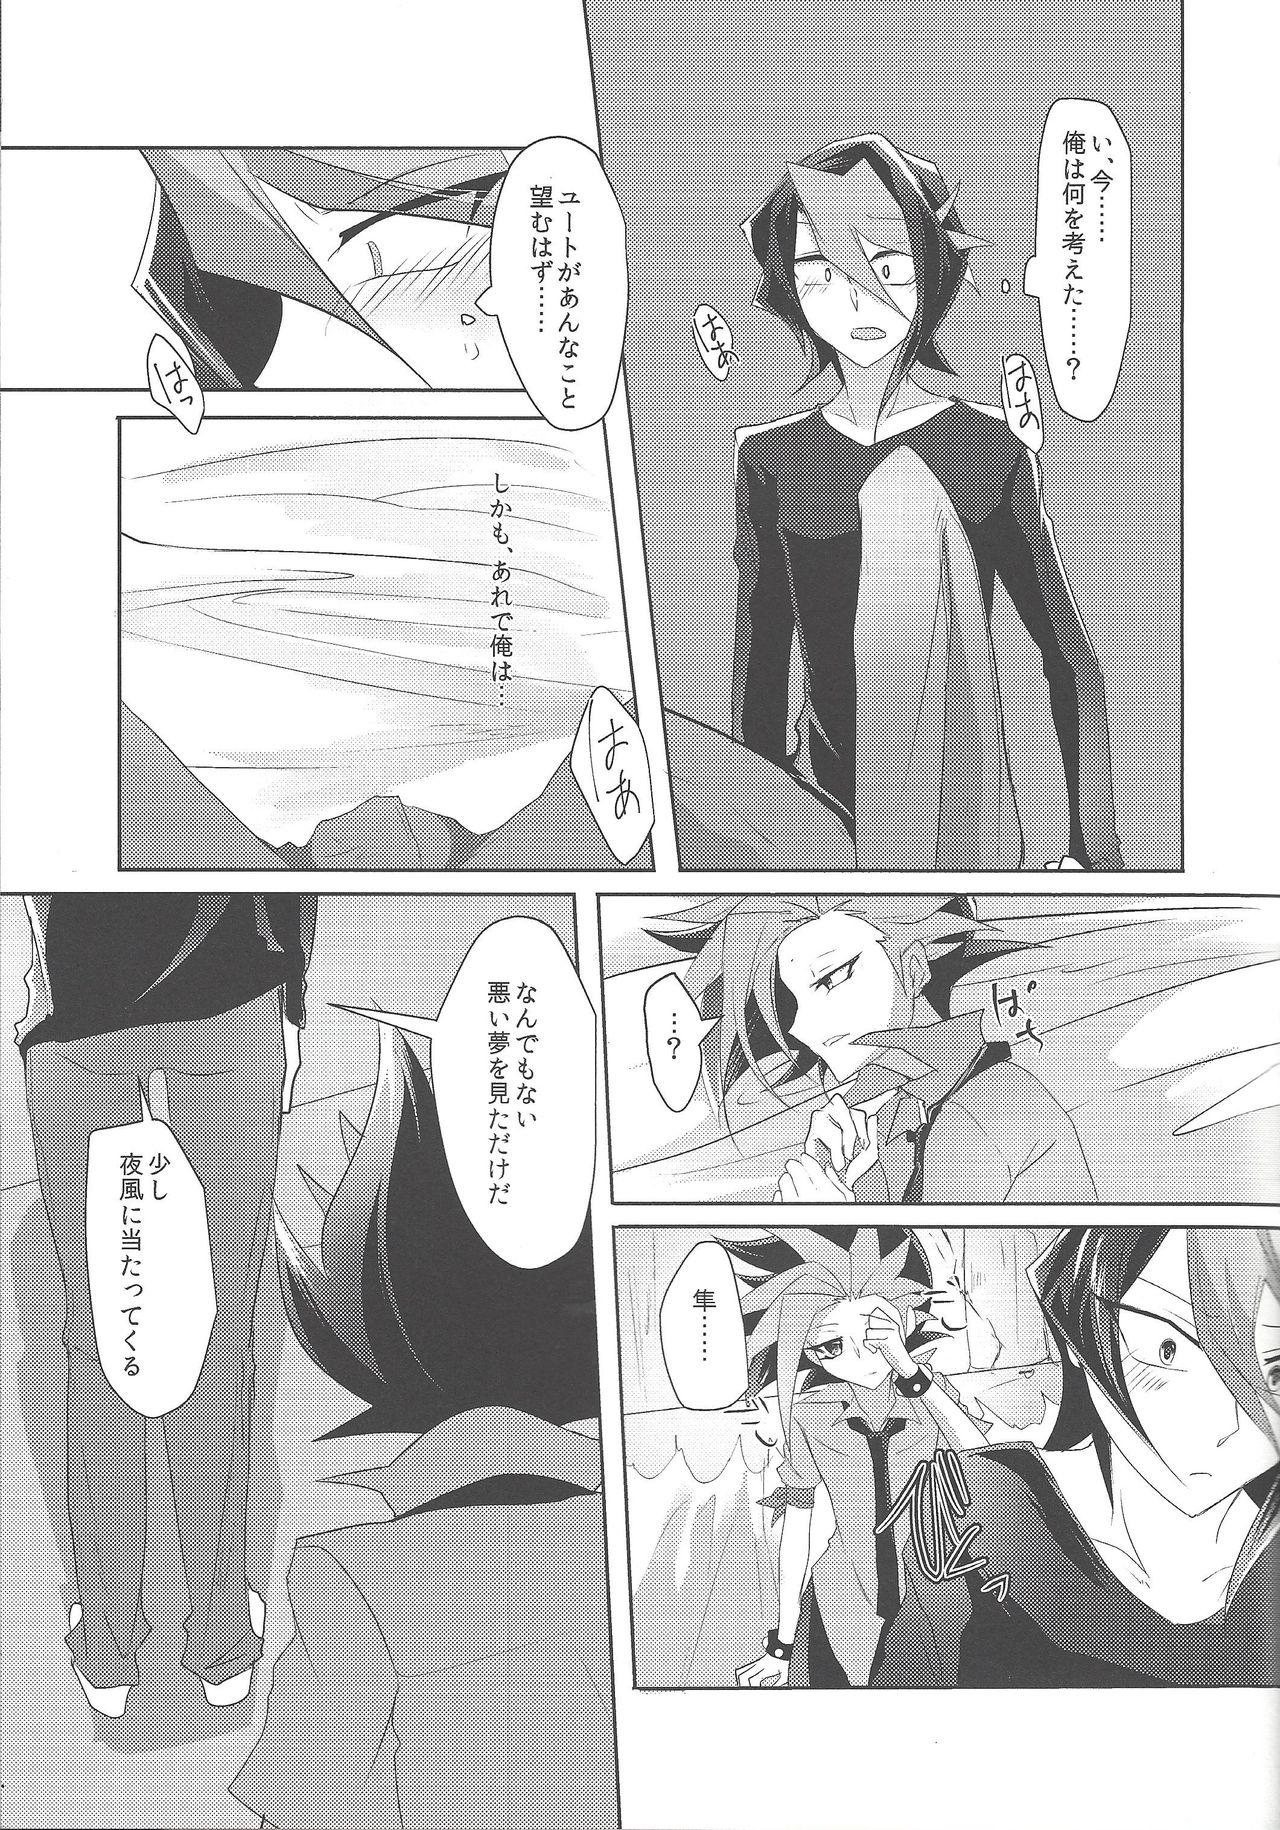 Uncensored Kimi to kokoro no risōkyō - Yu-gi-oh arc-v POV - Page 10